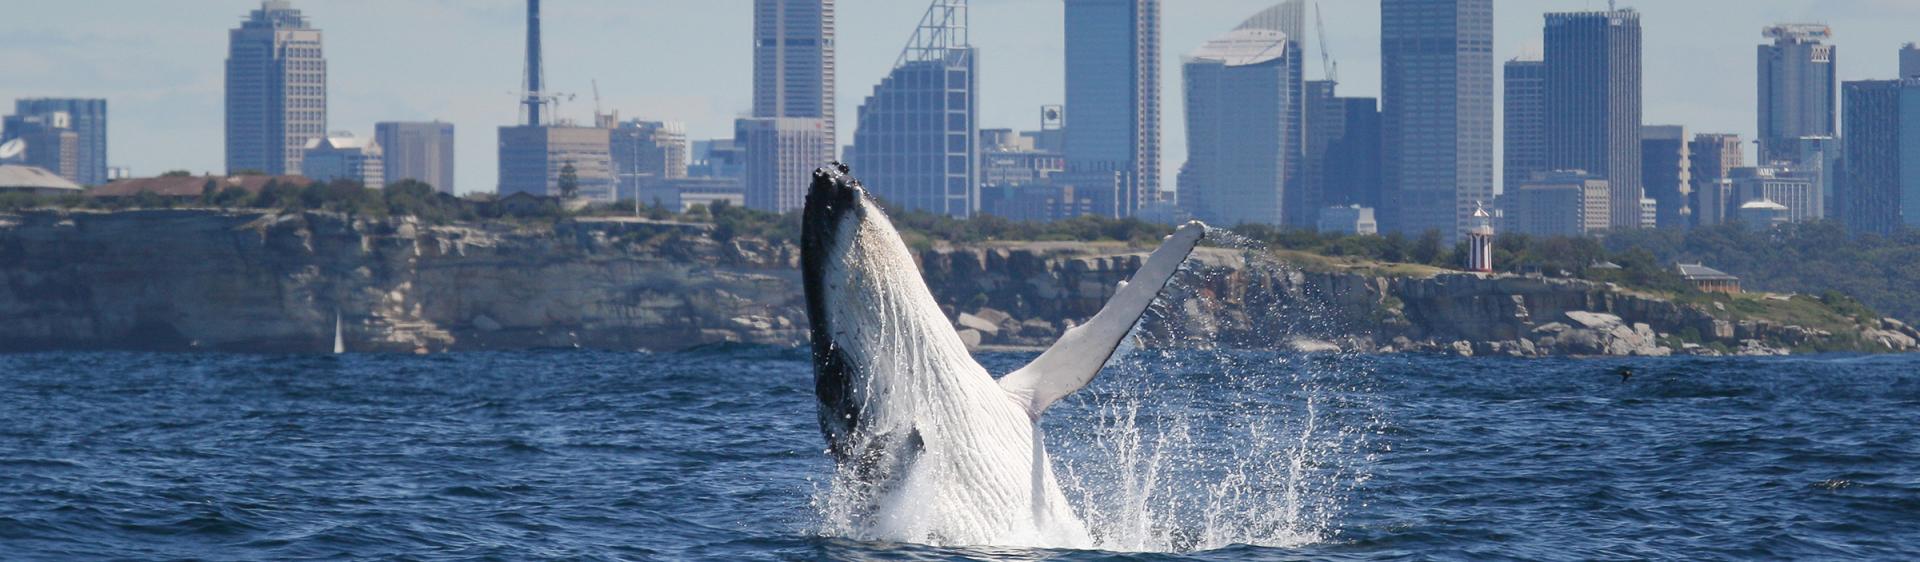 Wale beobachten in Sydney